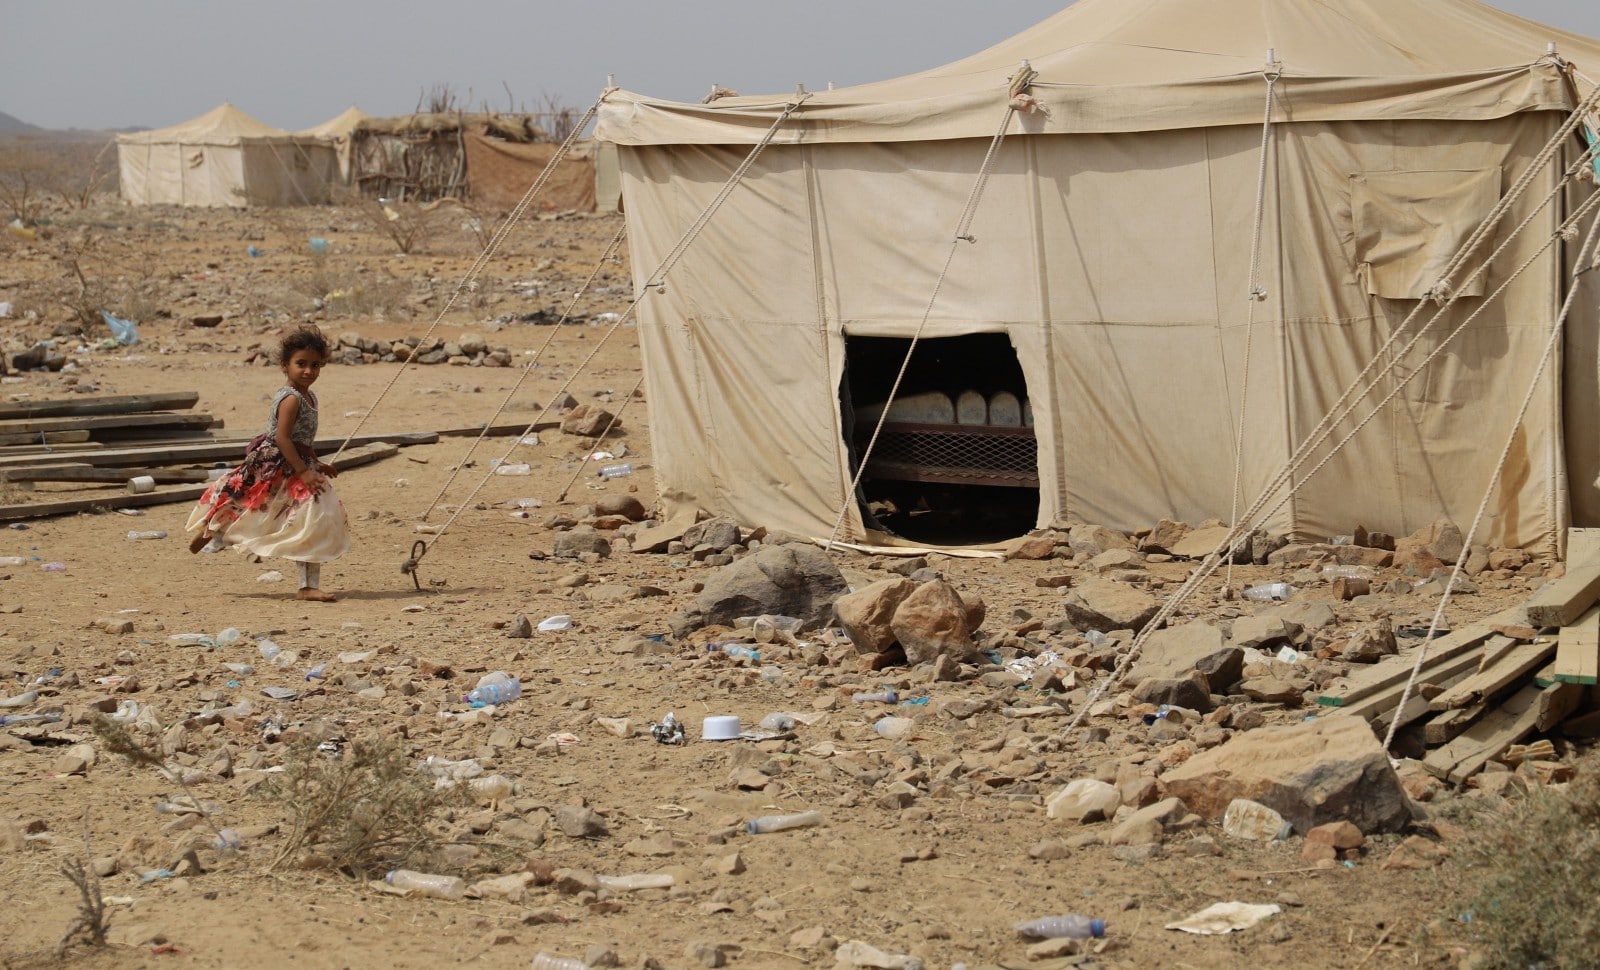 Camp yéménite à Haradh en province d'Hajjah.
© CHINE NOUVELLE/ SIPA